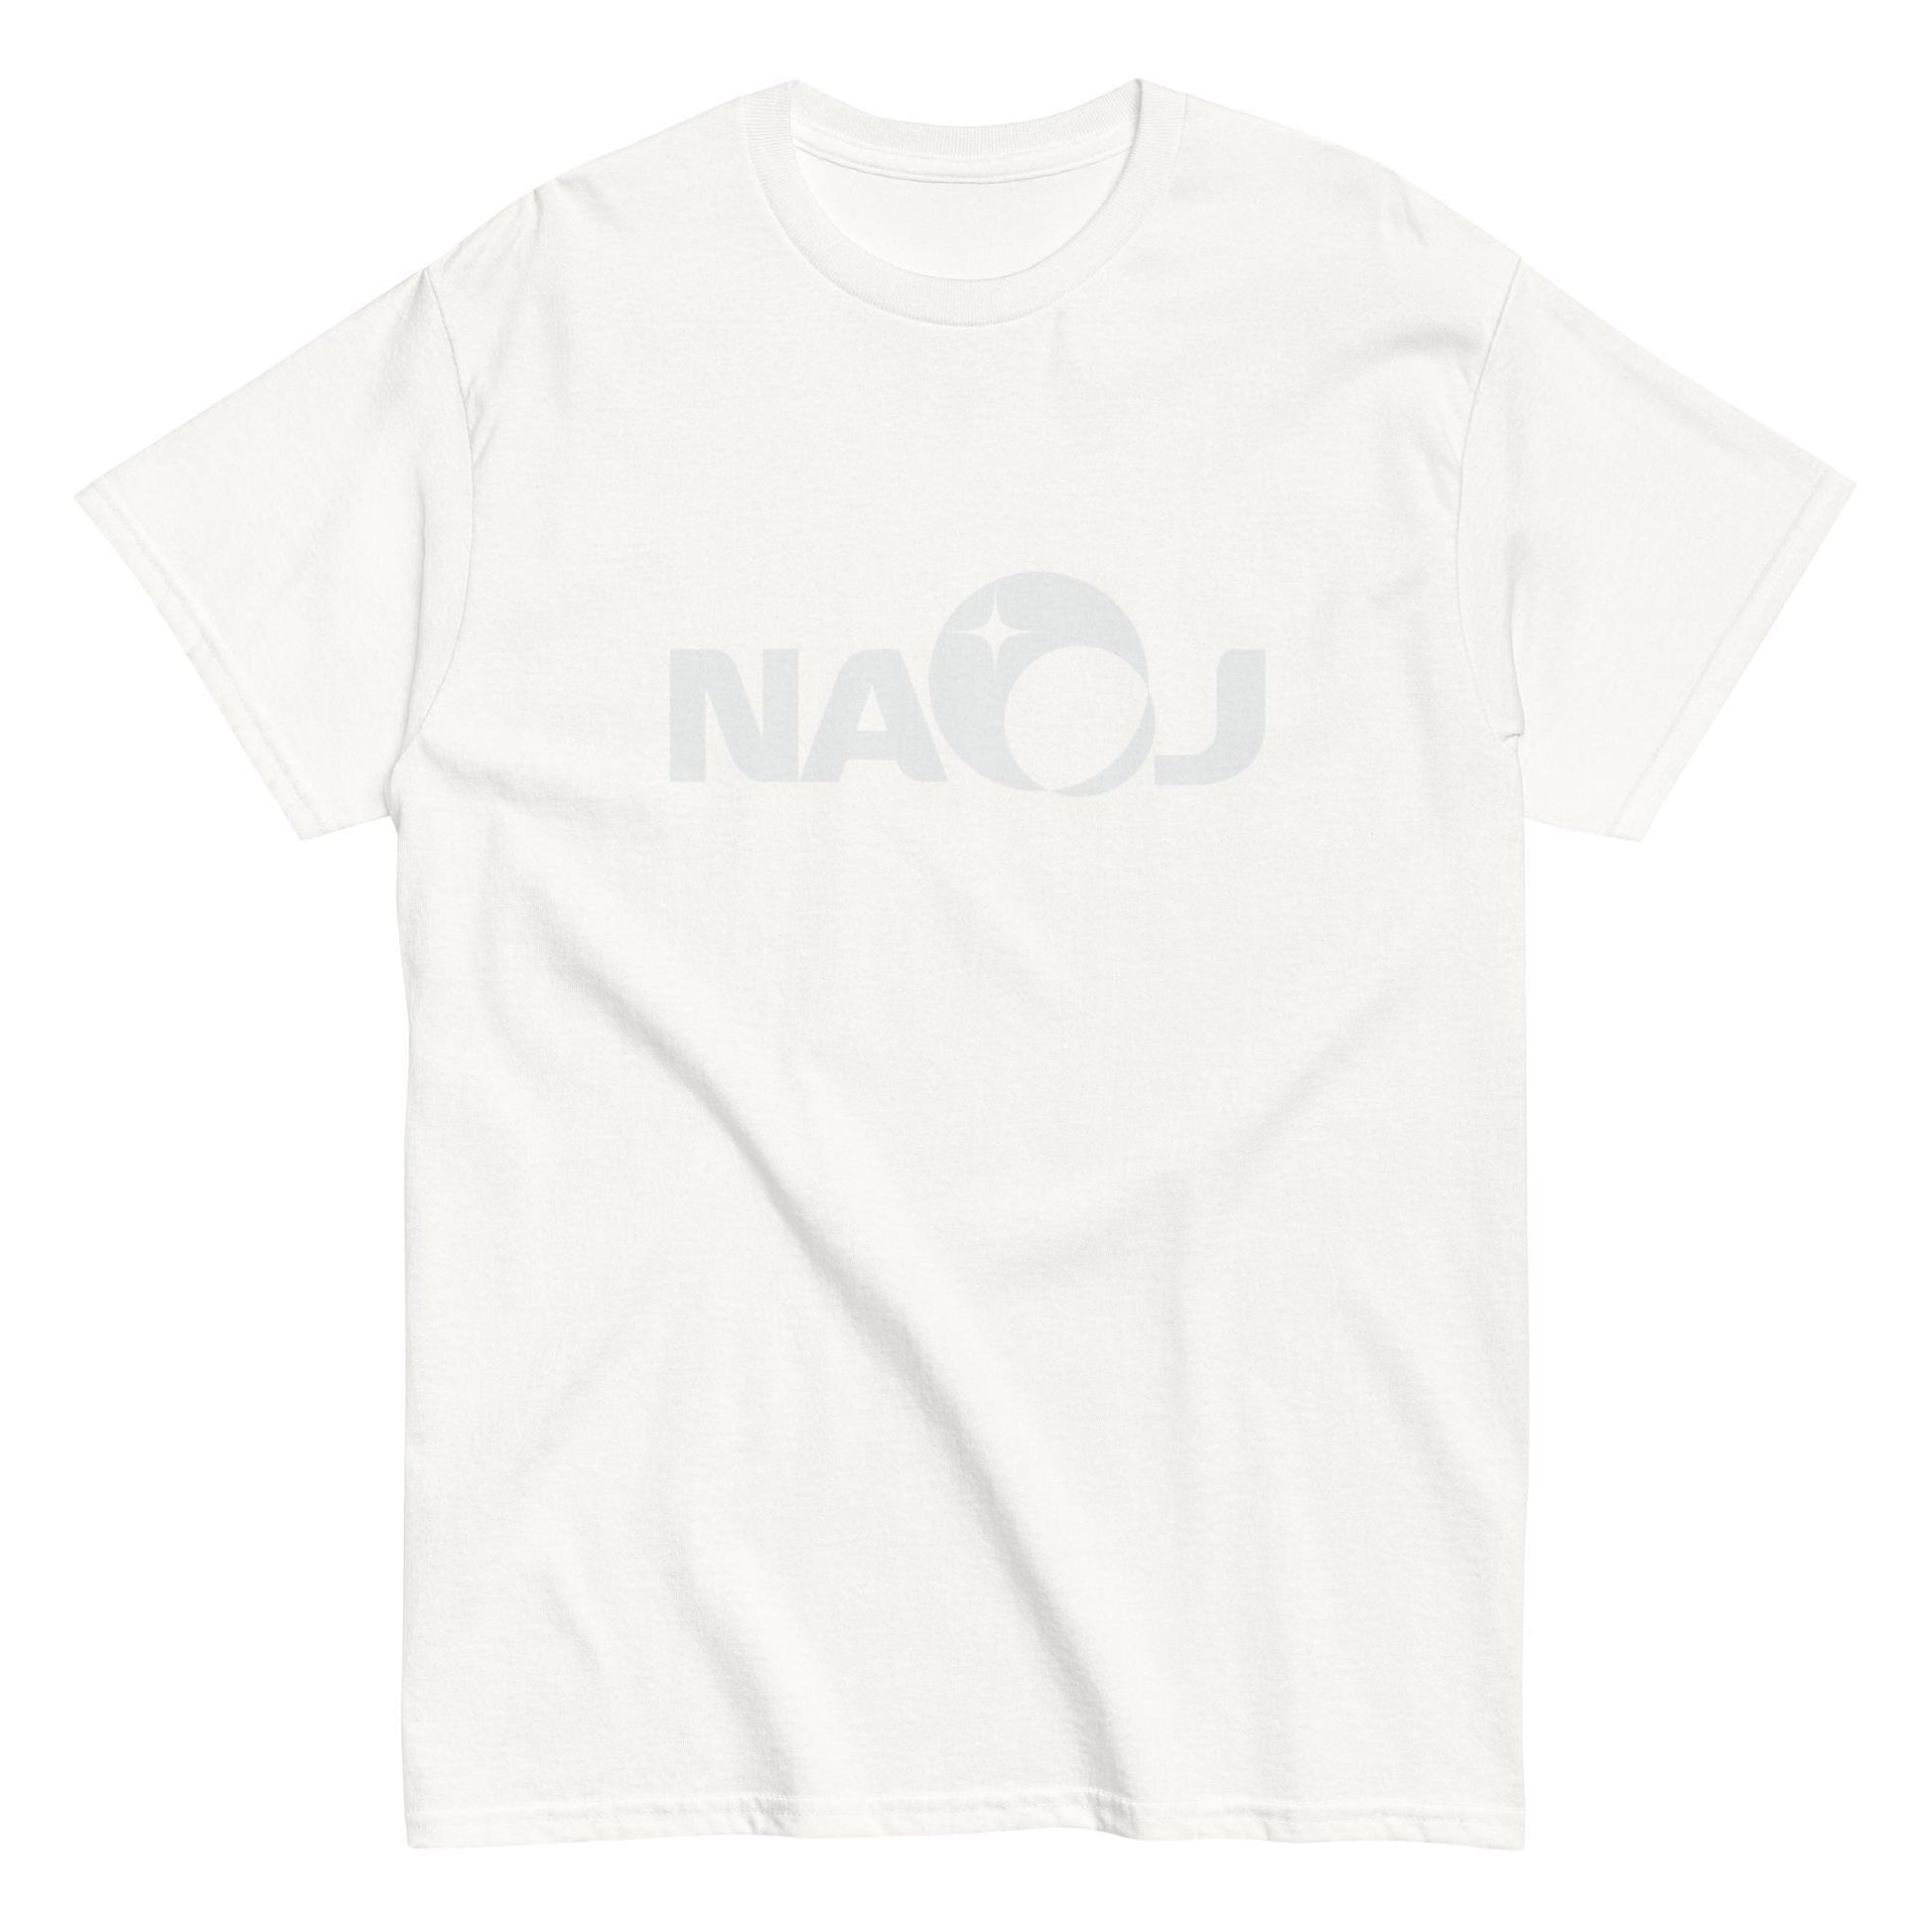 国立天文台 NAOJ ロゴマーク ヘビーウェイト Tシャツ ホワイト x ホワイト M 00